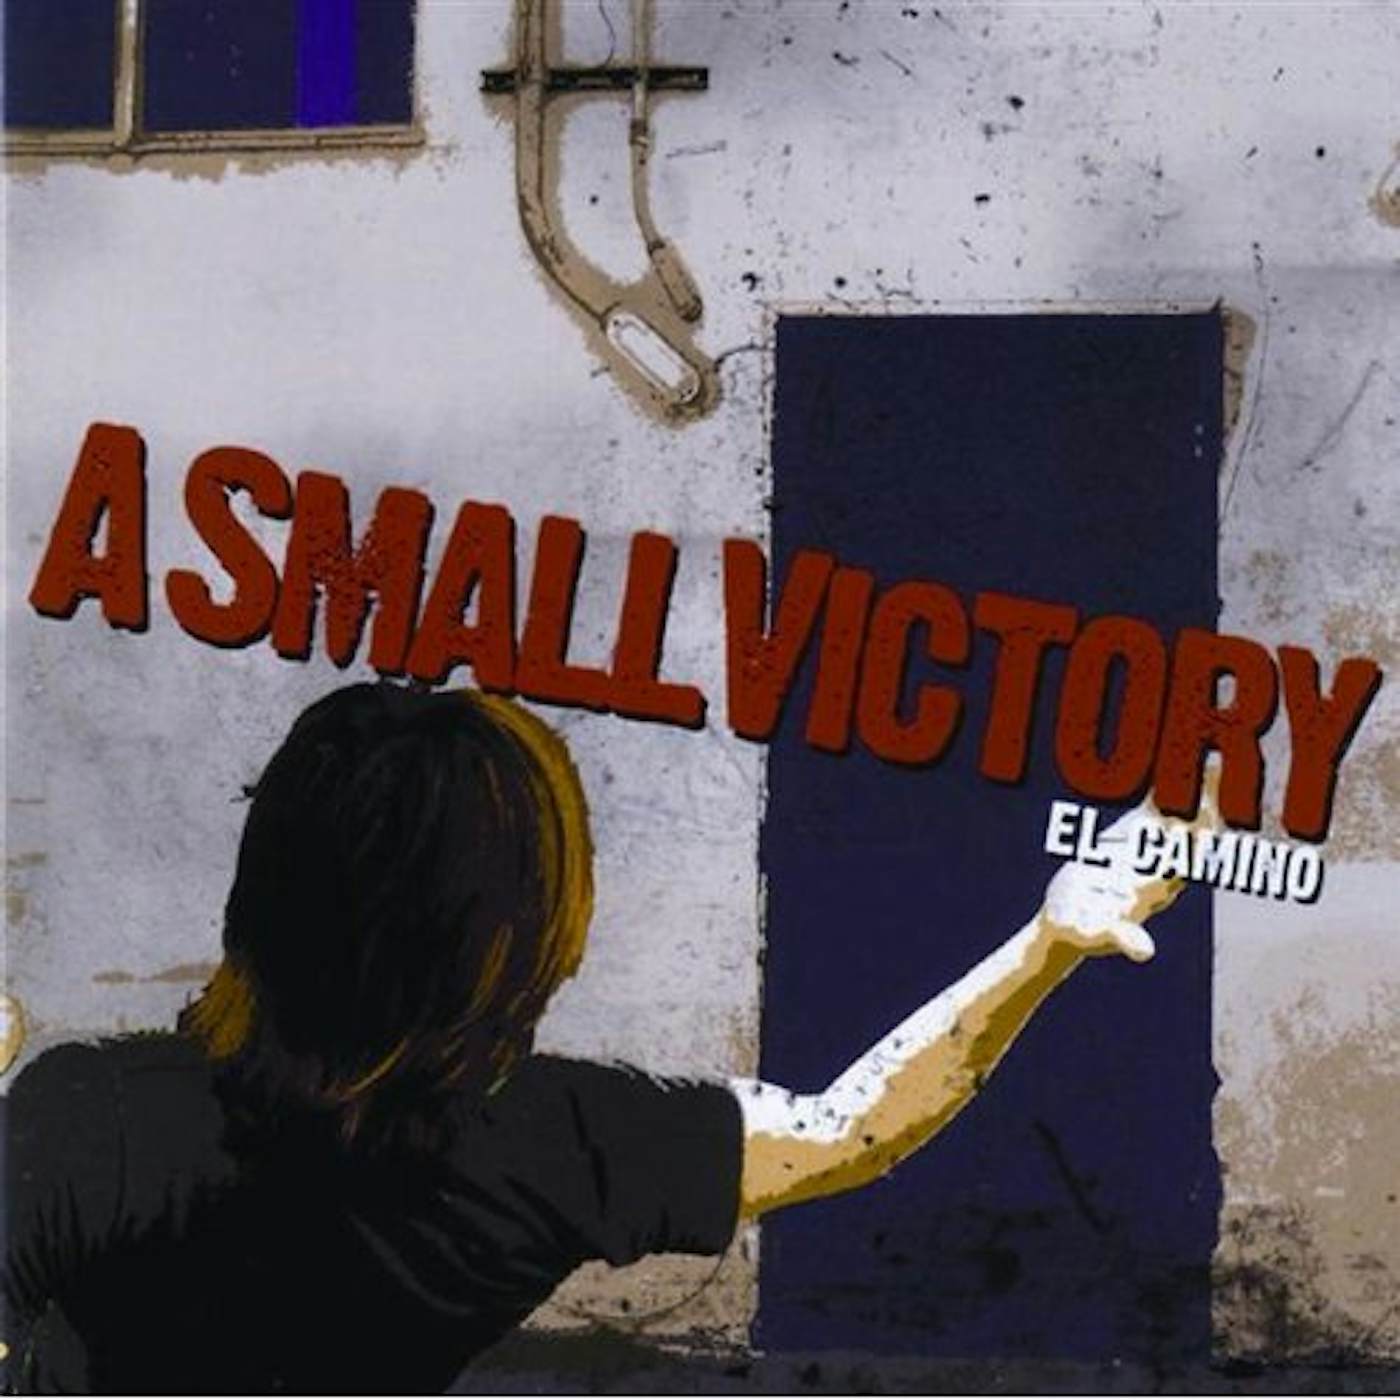 A Small Victory EL CAMINO CD